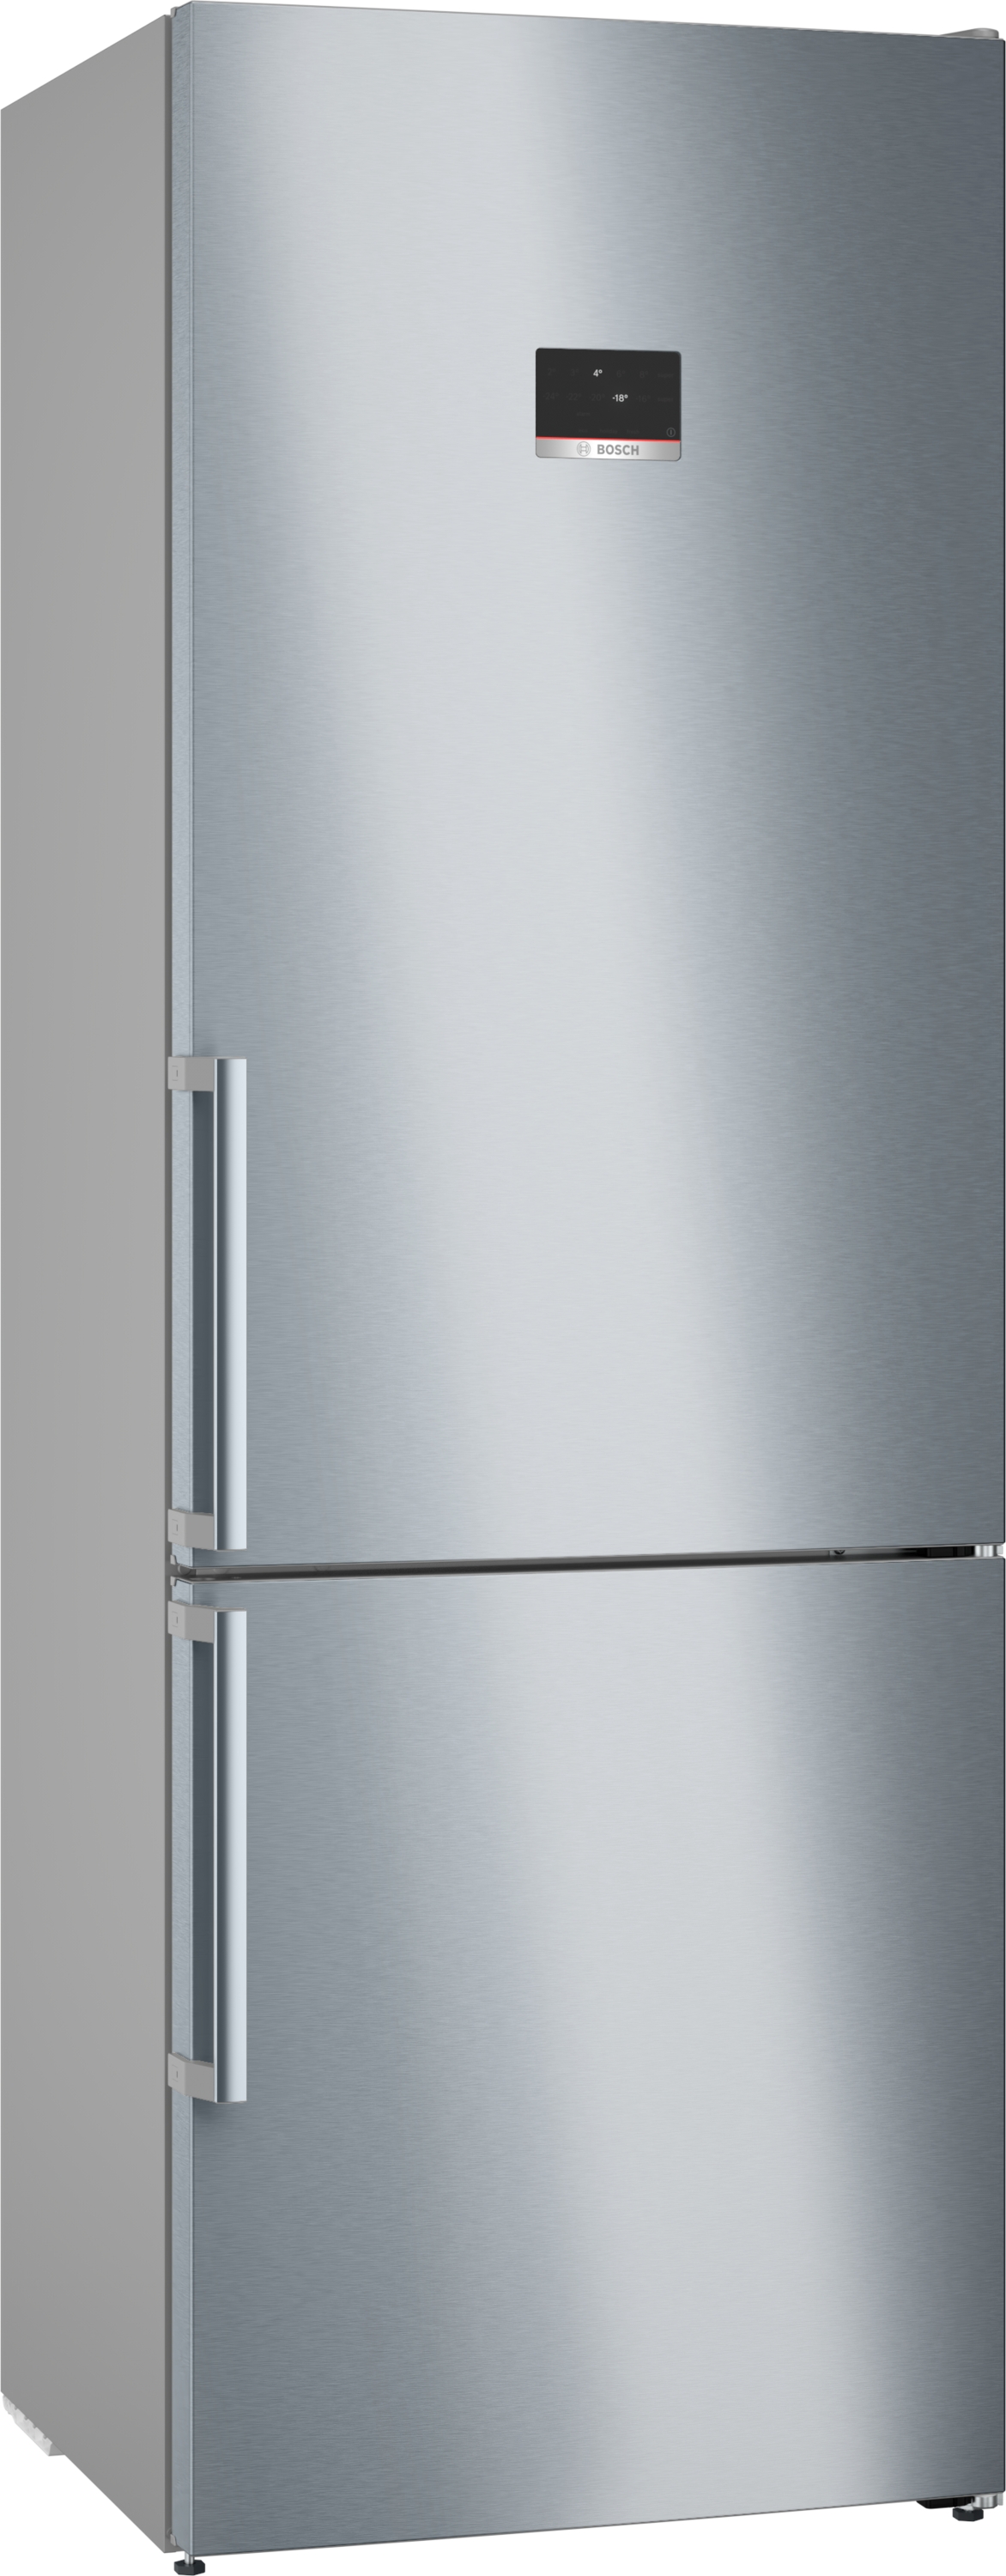 Bosch Serie 6, Freistehende Kühl-Gefrier-Kombination mit Gefrierbereich unten, 203 x 70 cm, Edelstahl (mit Antifingerprint), KGN49AIBT